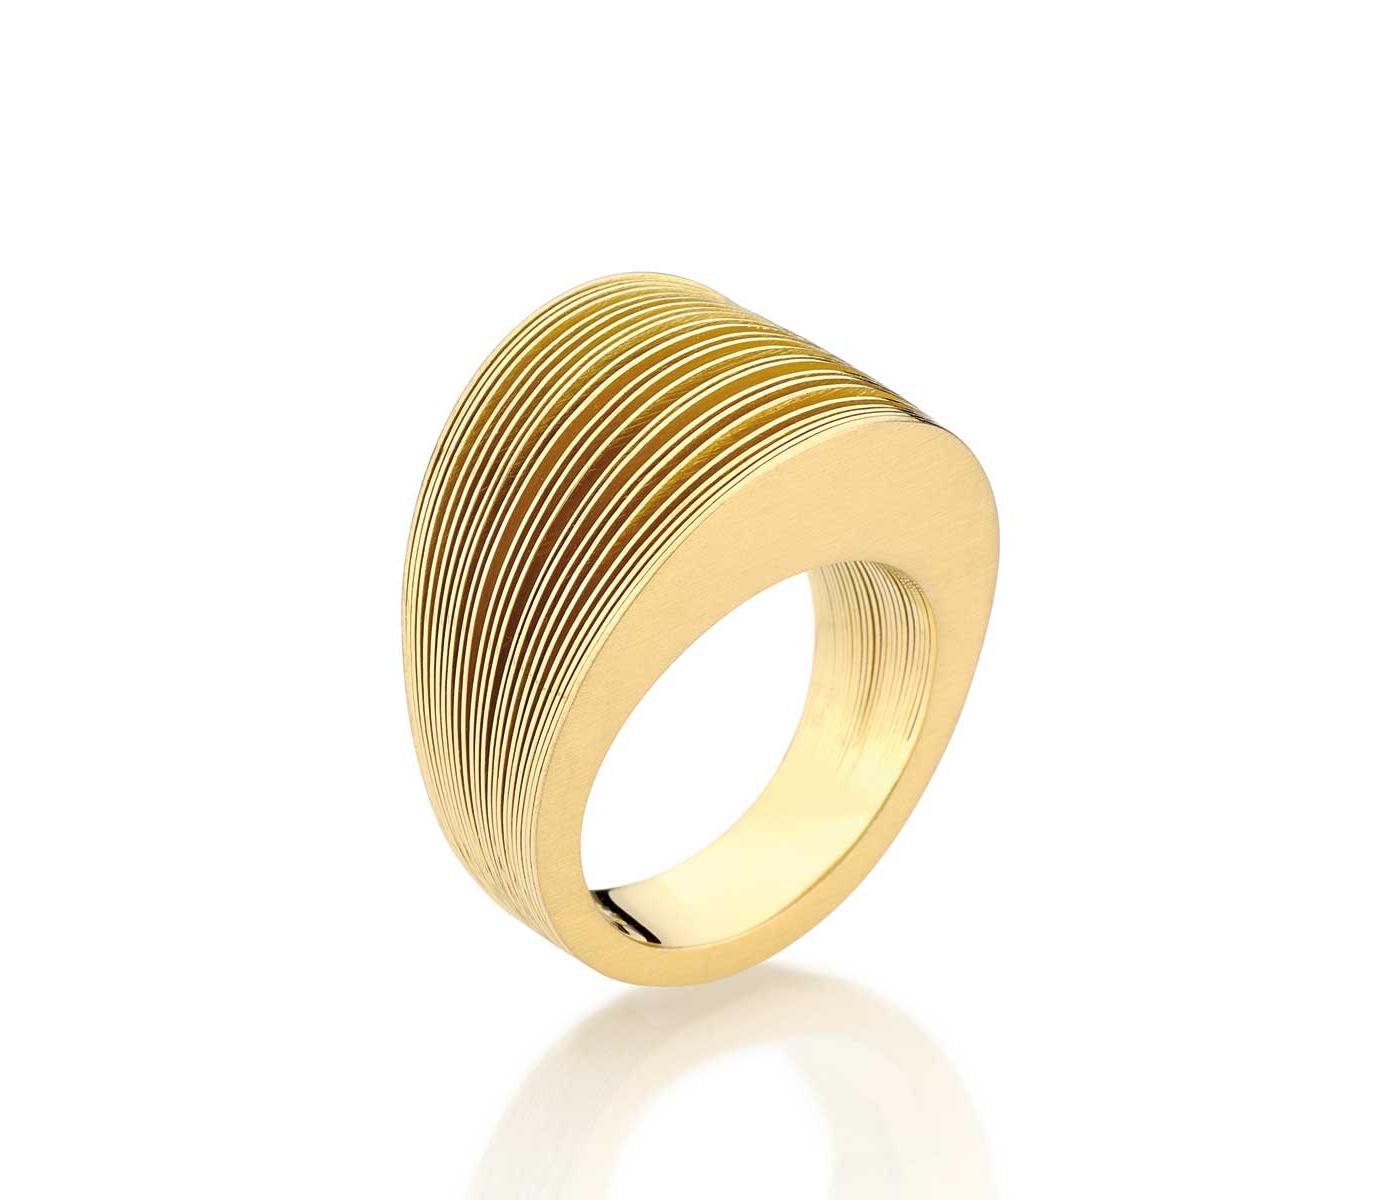 Ring by Antonio Bernardo